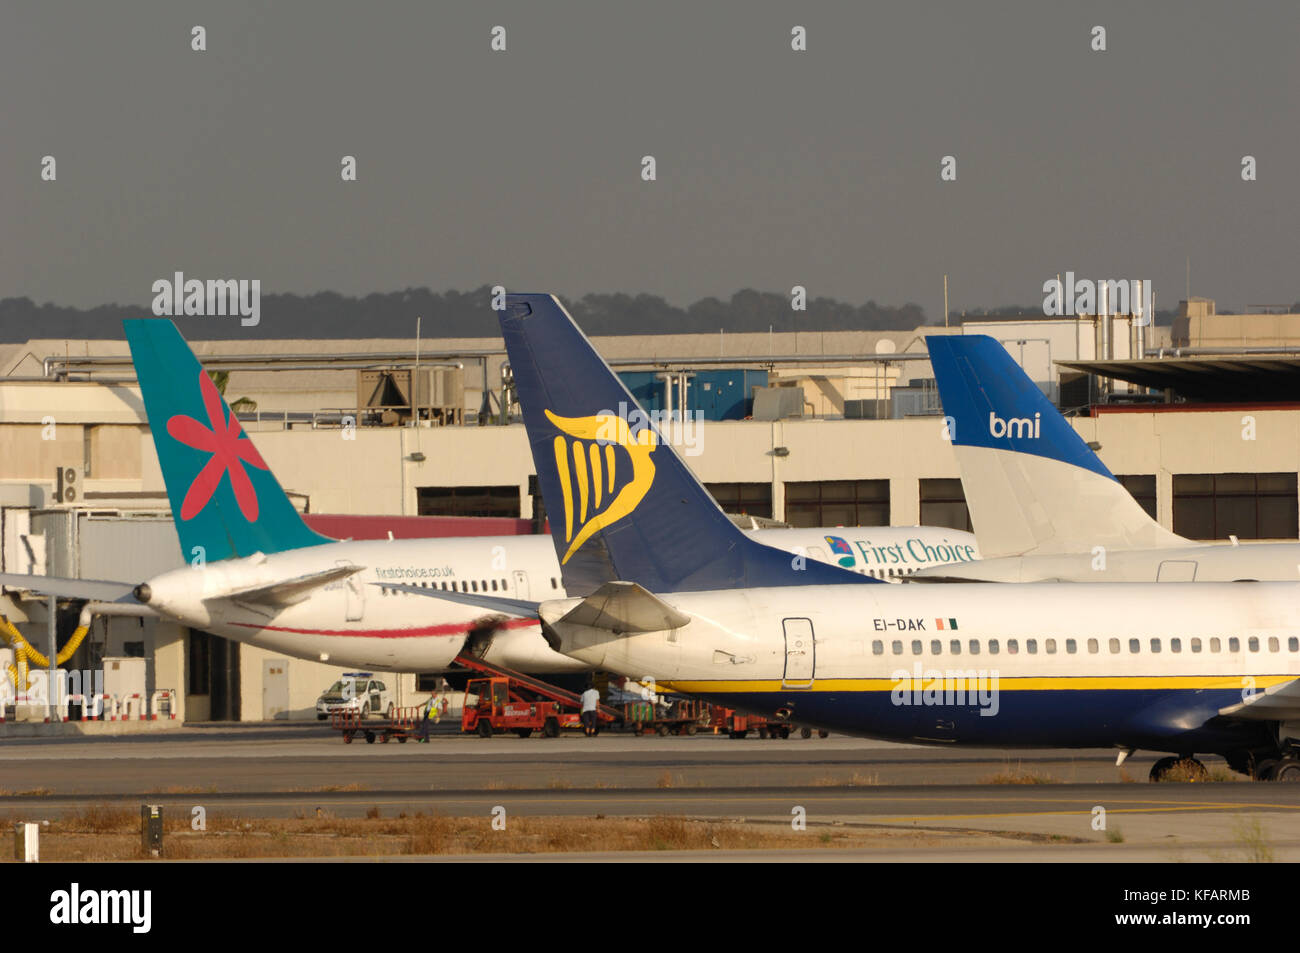 Las aletas de cola de Ryanair Boeing 737-800 con First Choice Airways 757-200 y bmi British Midland International Airbus A320-200 estacionados en la terminal beh Foto de stock